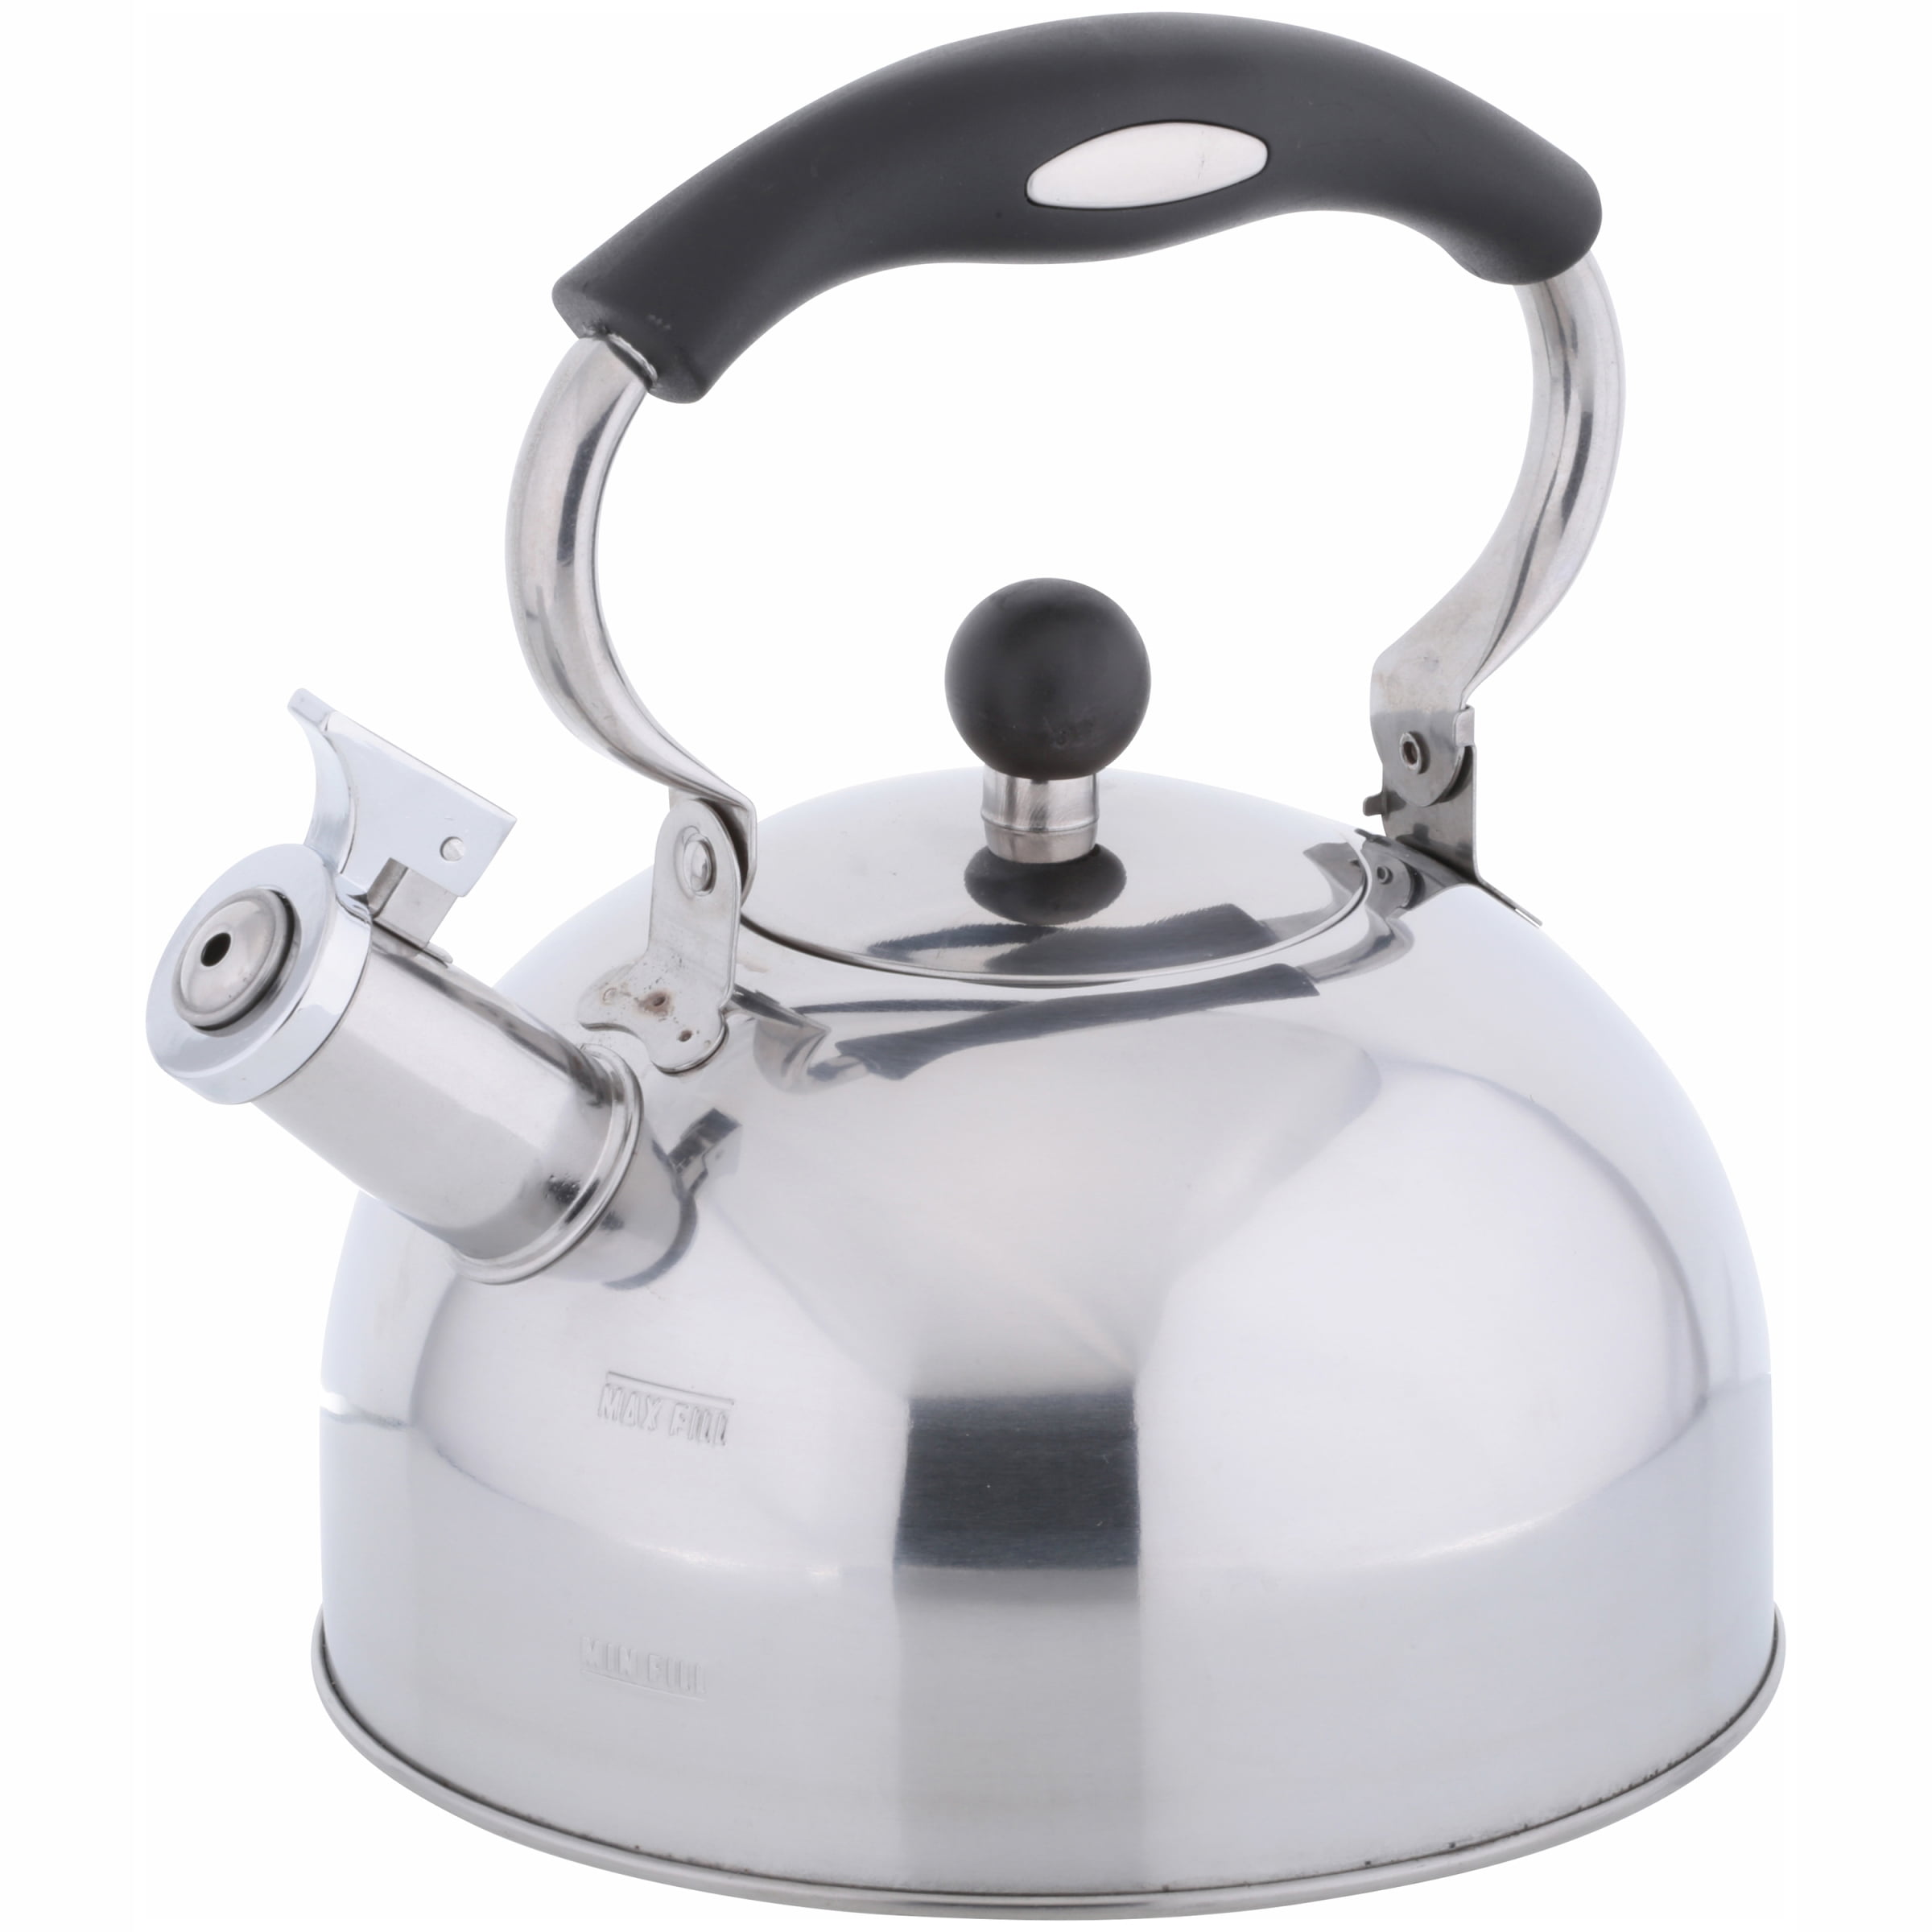 electric tea kettle walmart